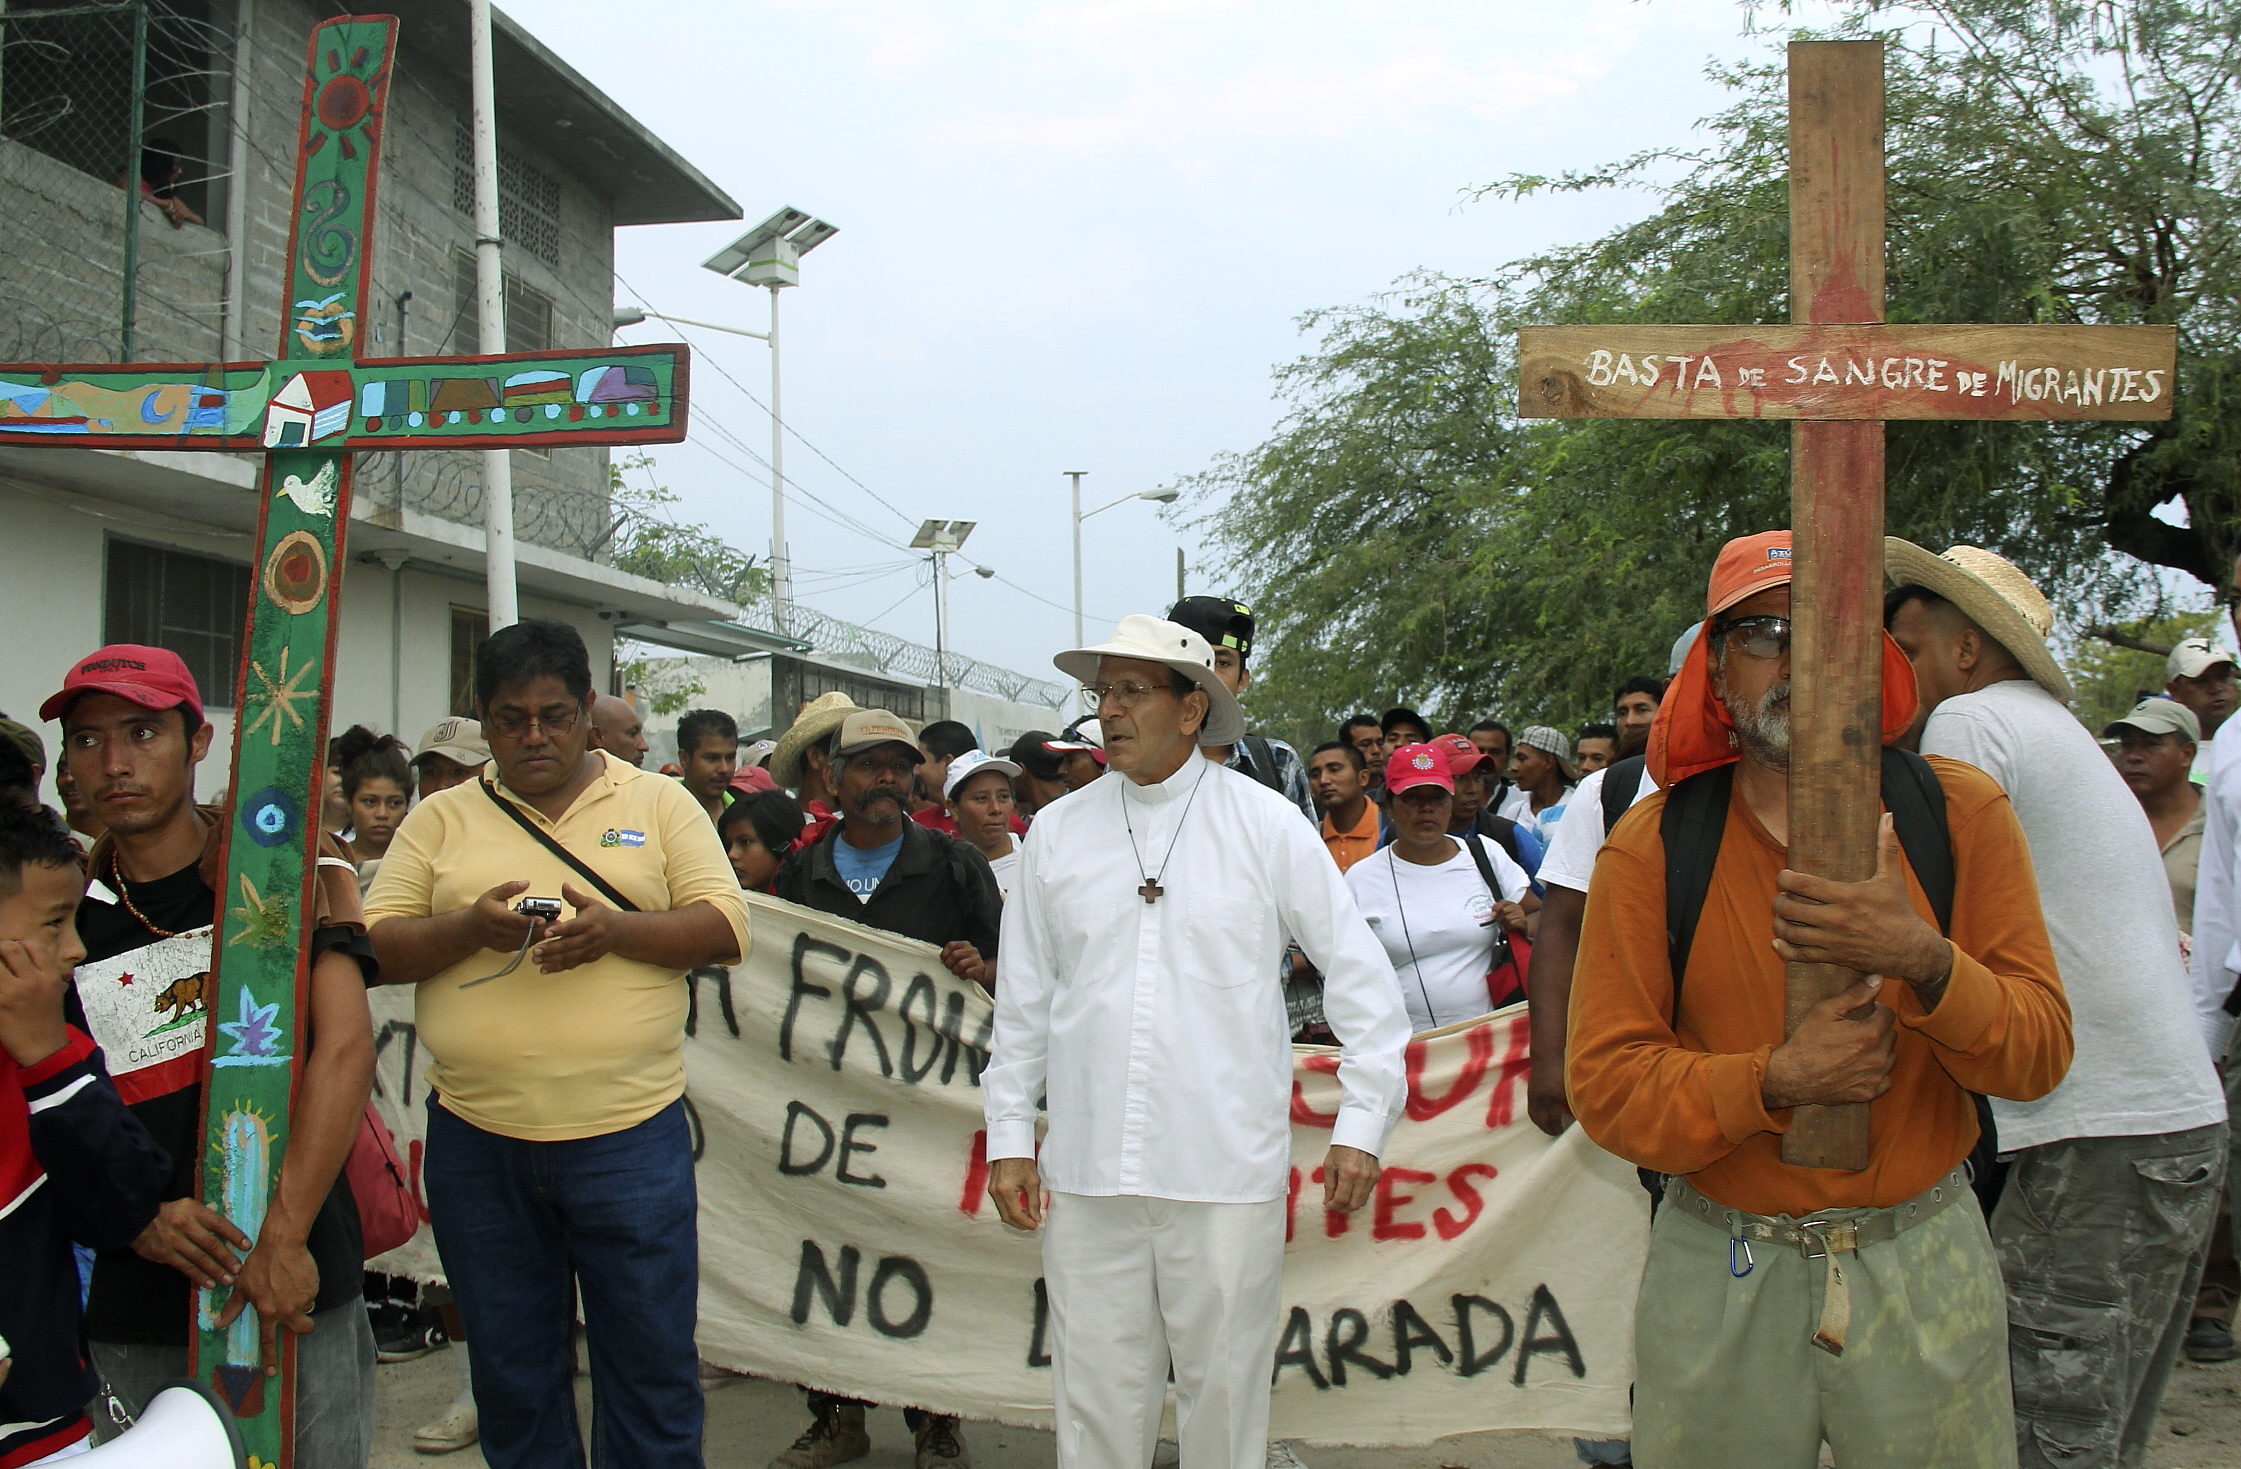 La comisión partió el pasado jueves desde Ixtepec, Oaxaca a bordo de autobuses que fueron facilitados por la CNTE.